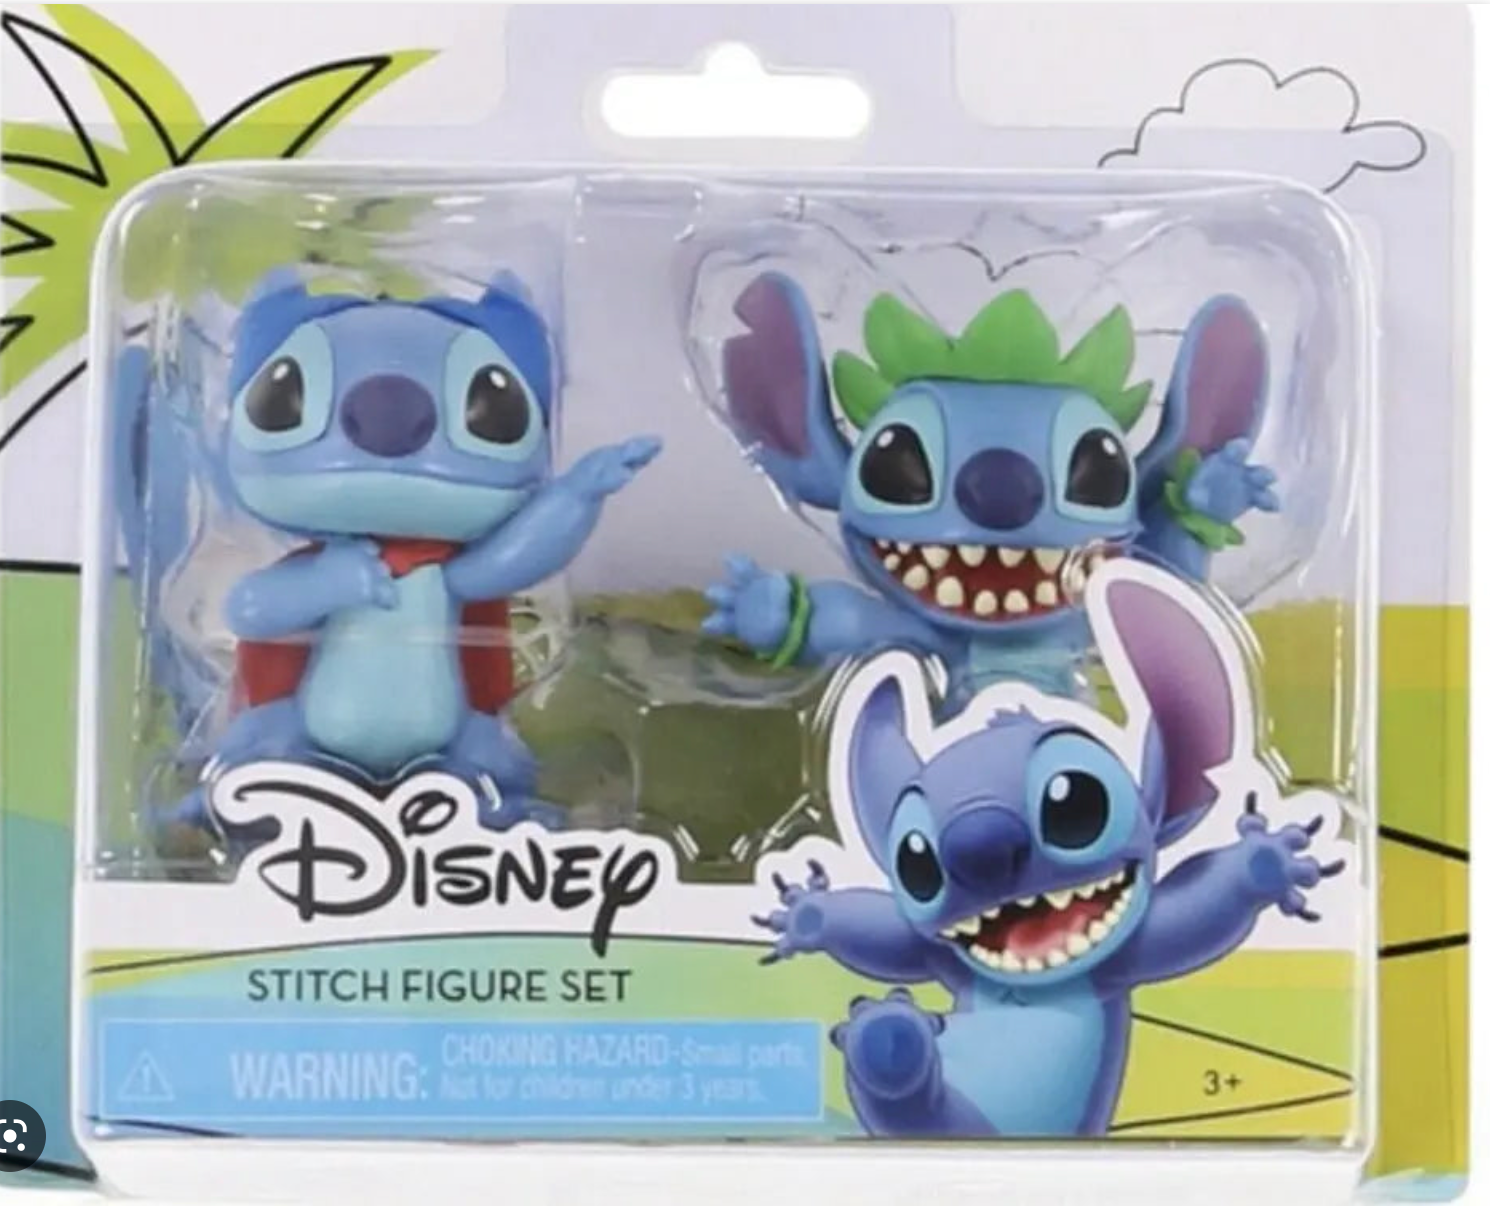 Disney LILO & Stitch Figure Set 3